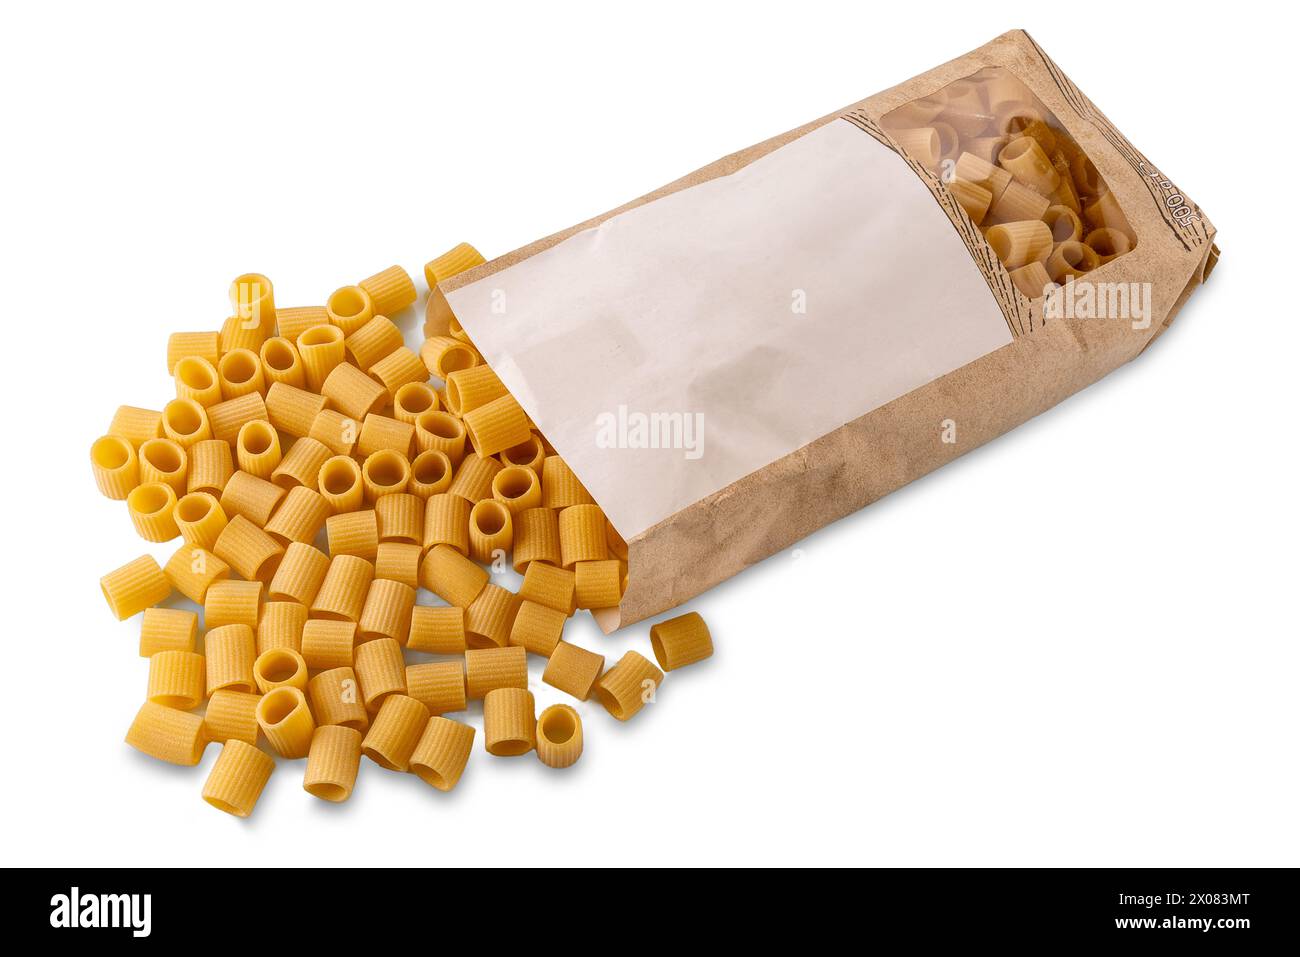 Pasta Macheroni mezze maniche di grano italiano trafilato al bronzo proveniente da un sacchetto di carta isolato sul bianco con percorso di ritaglio incluso Foto Stock